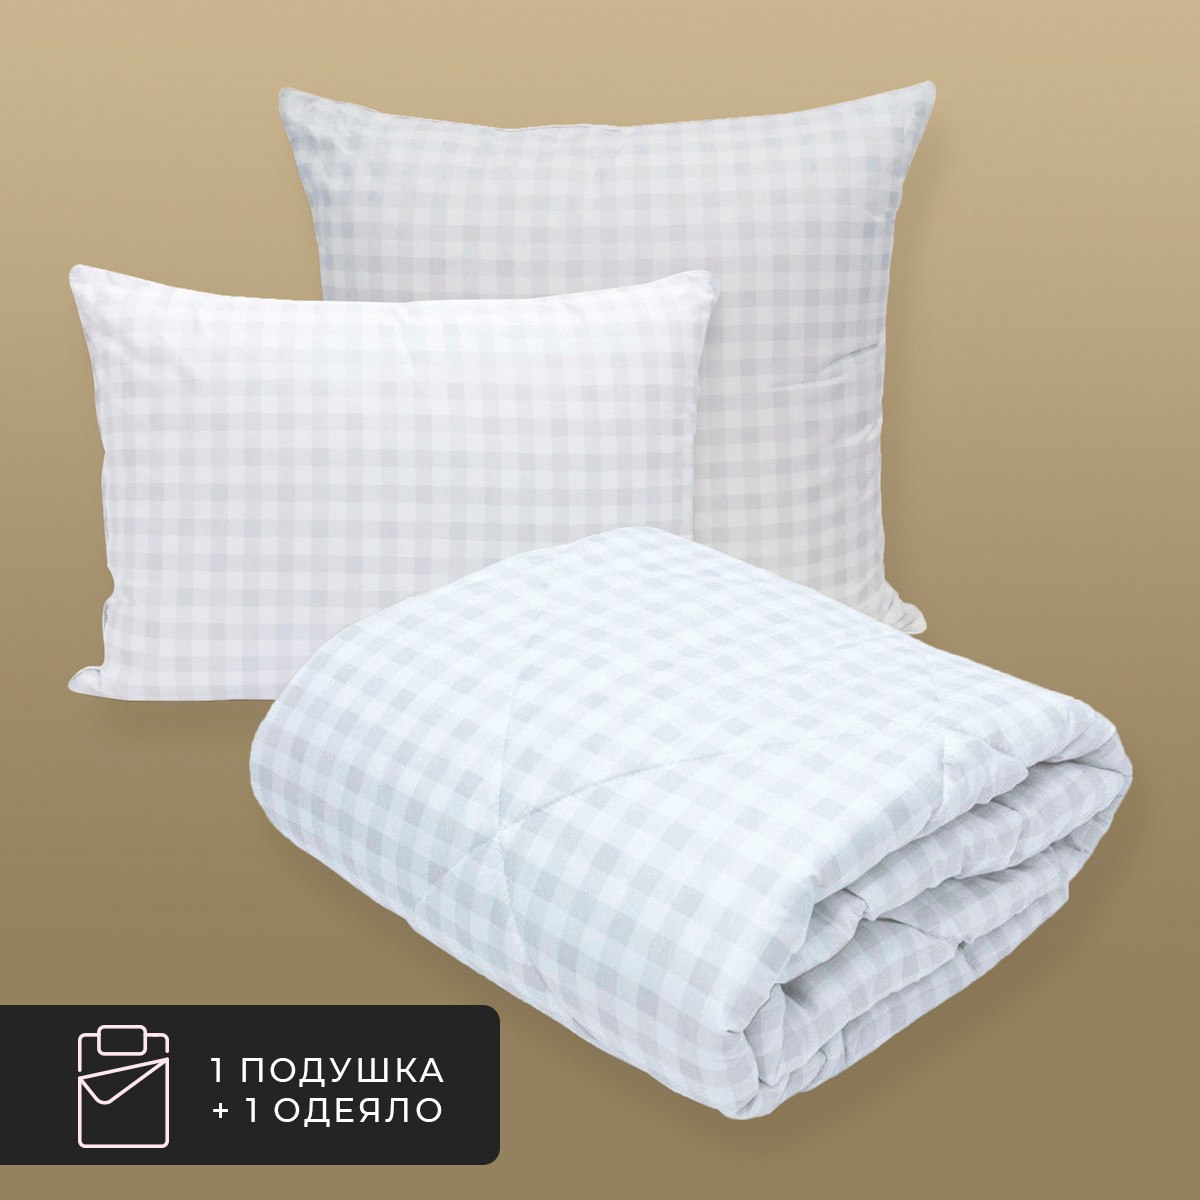 Набор 1 одеяло + 1 подушка Скандинавия, лебяжий пух в микрофибре (175х200, 50х70)